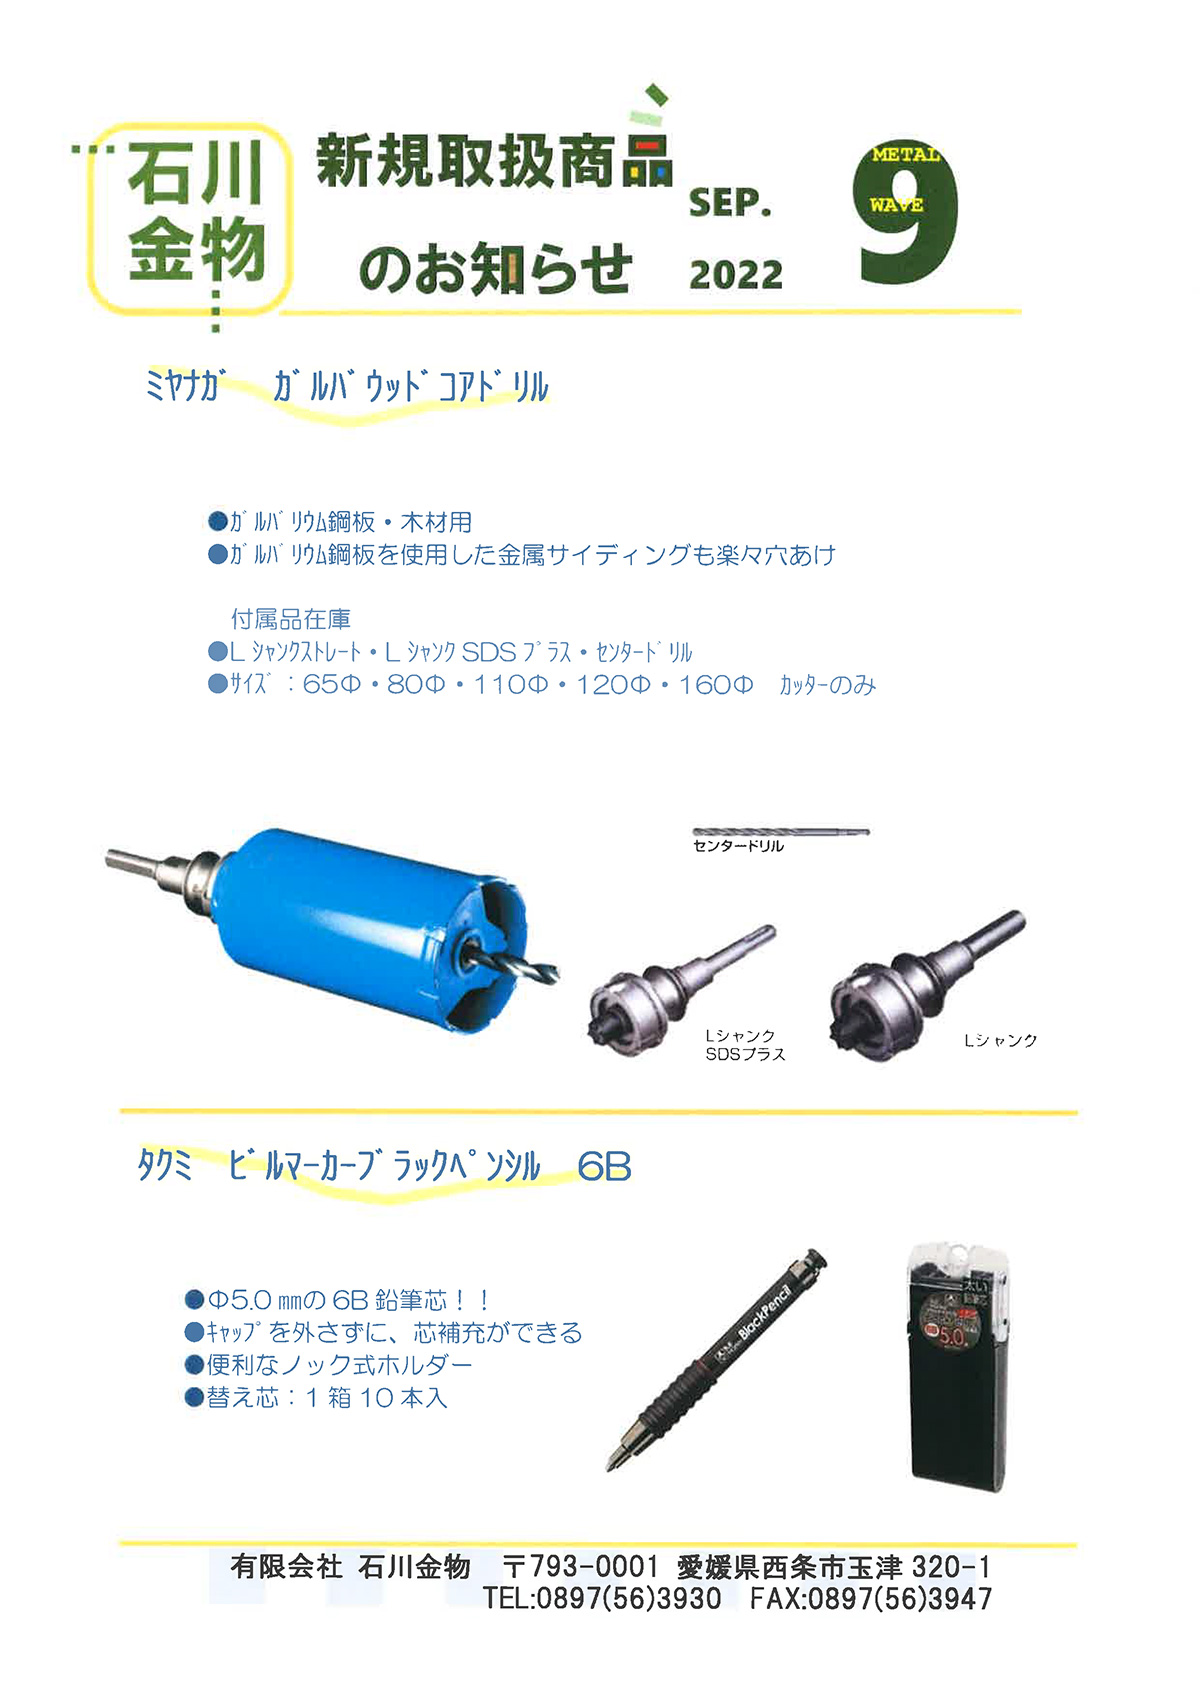 ミヤナガ PCGW160R ガルバウッドコア/ポリ SDSセット 160X130 電動工具